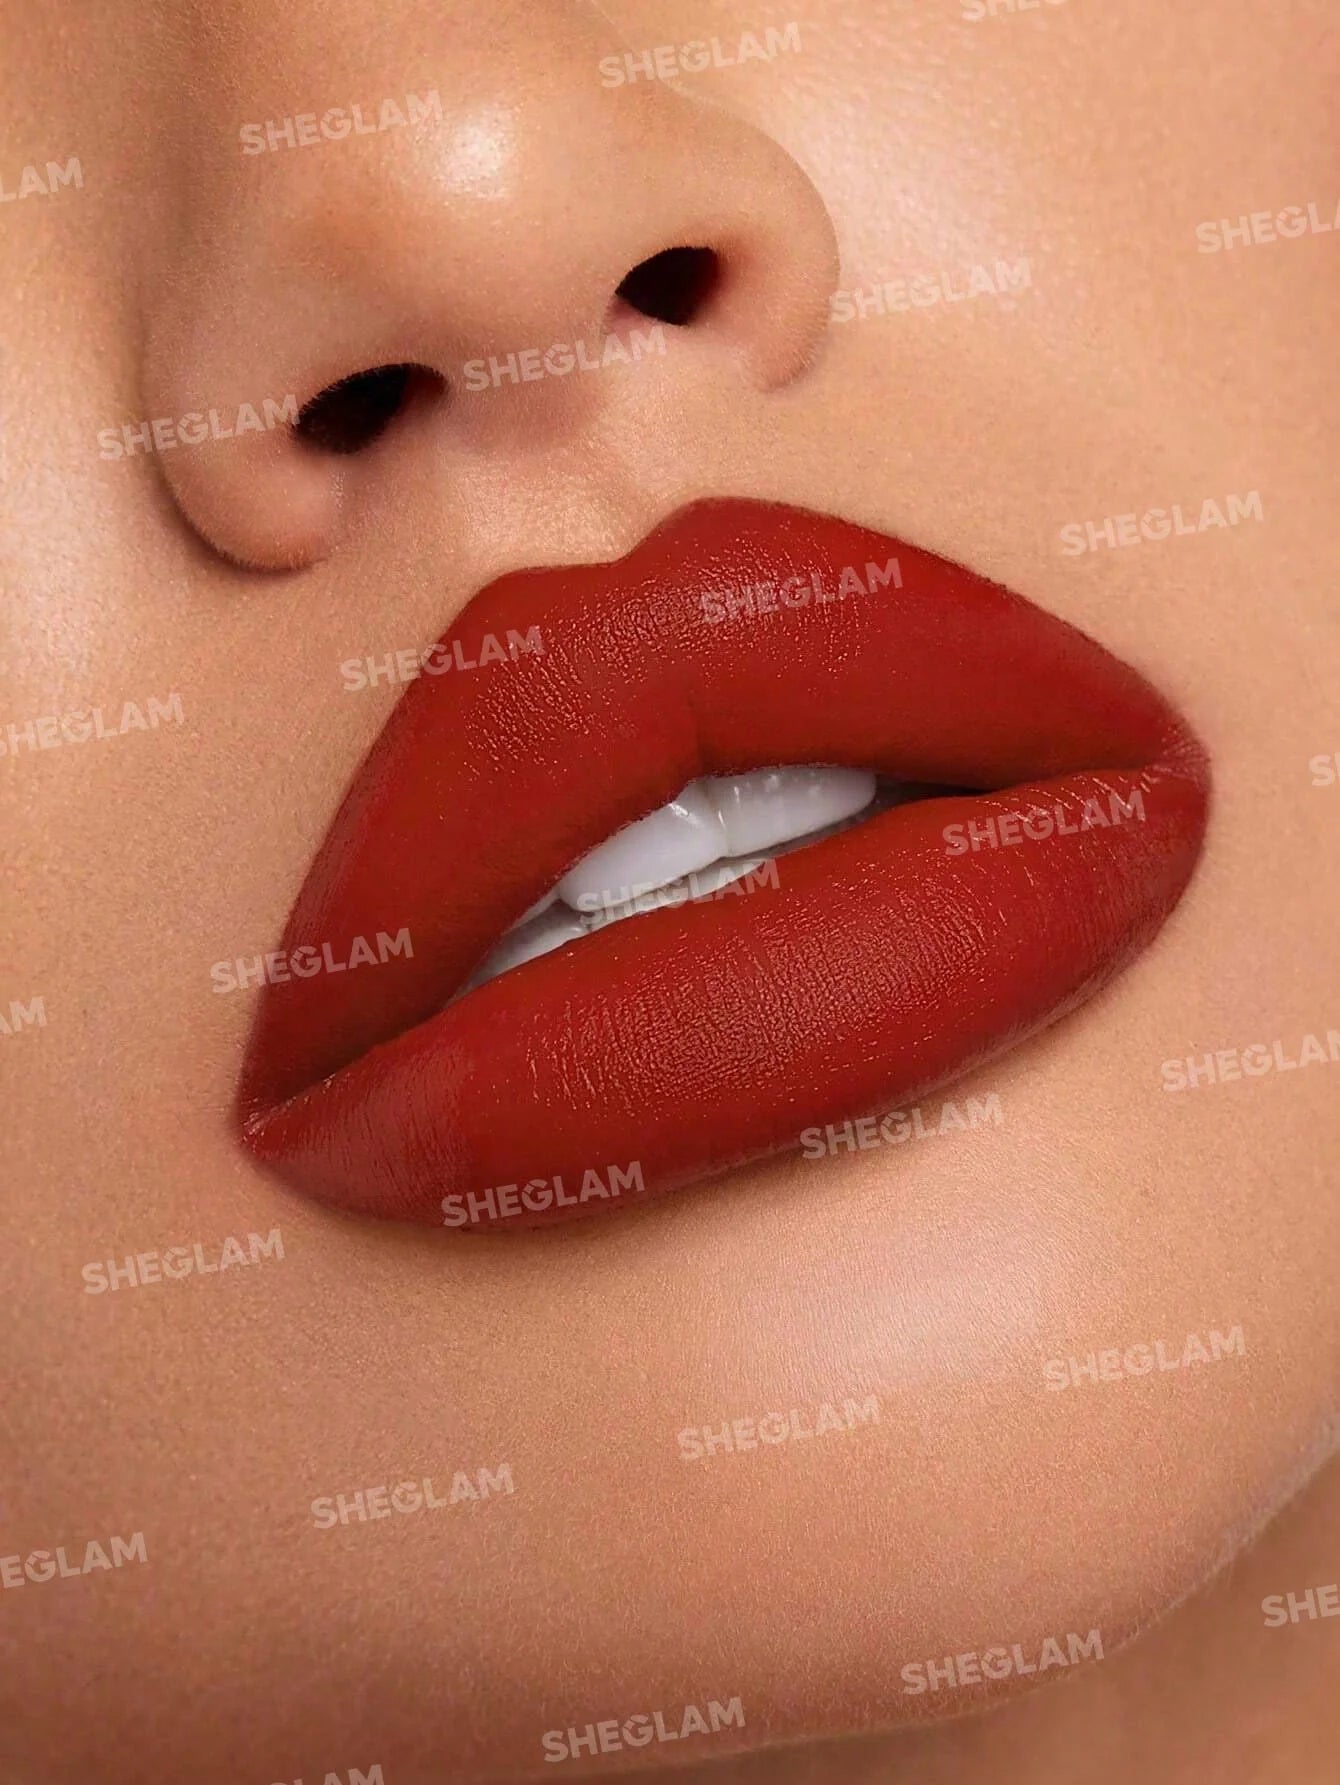 SHEGLAM Matte Allure Lipstick- Crimson Suede